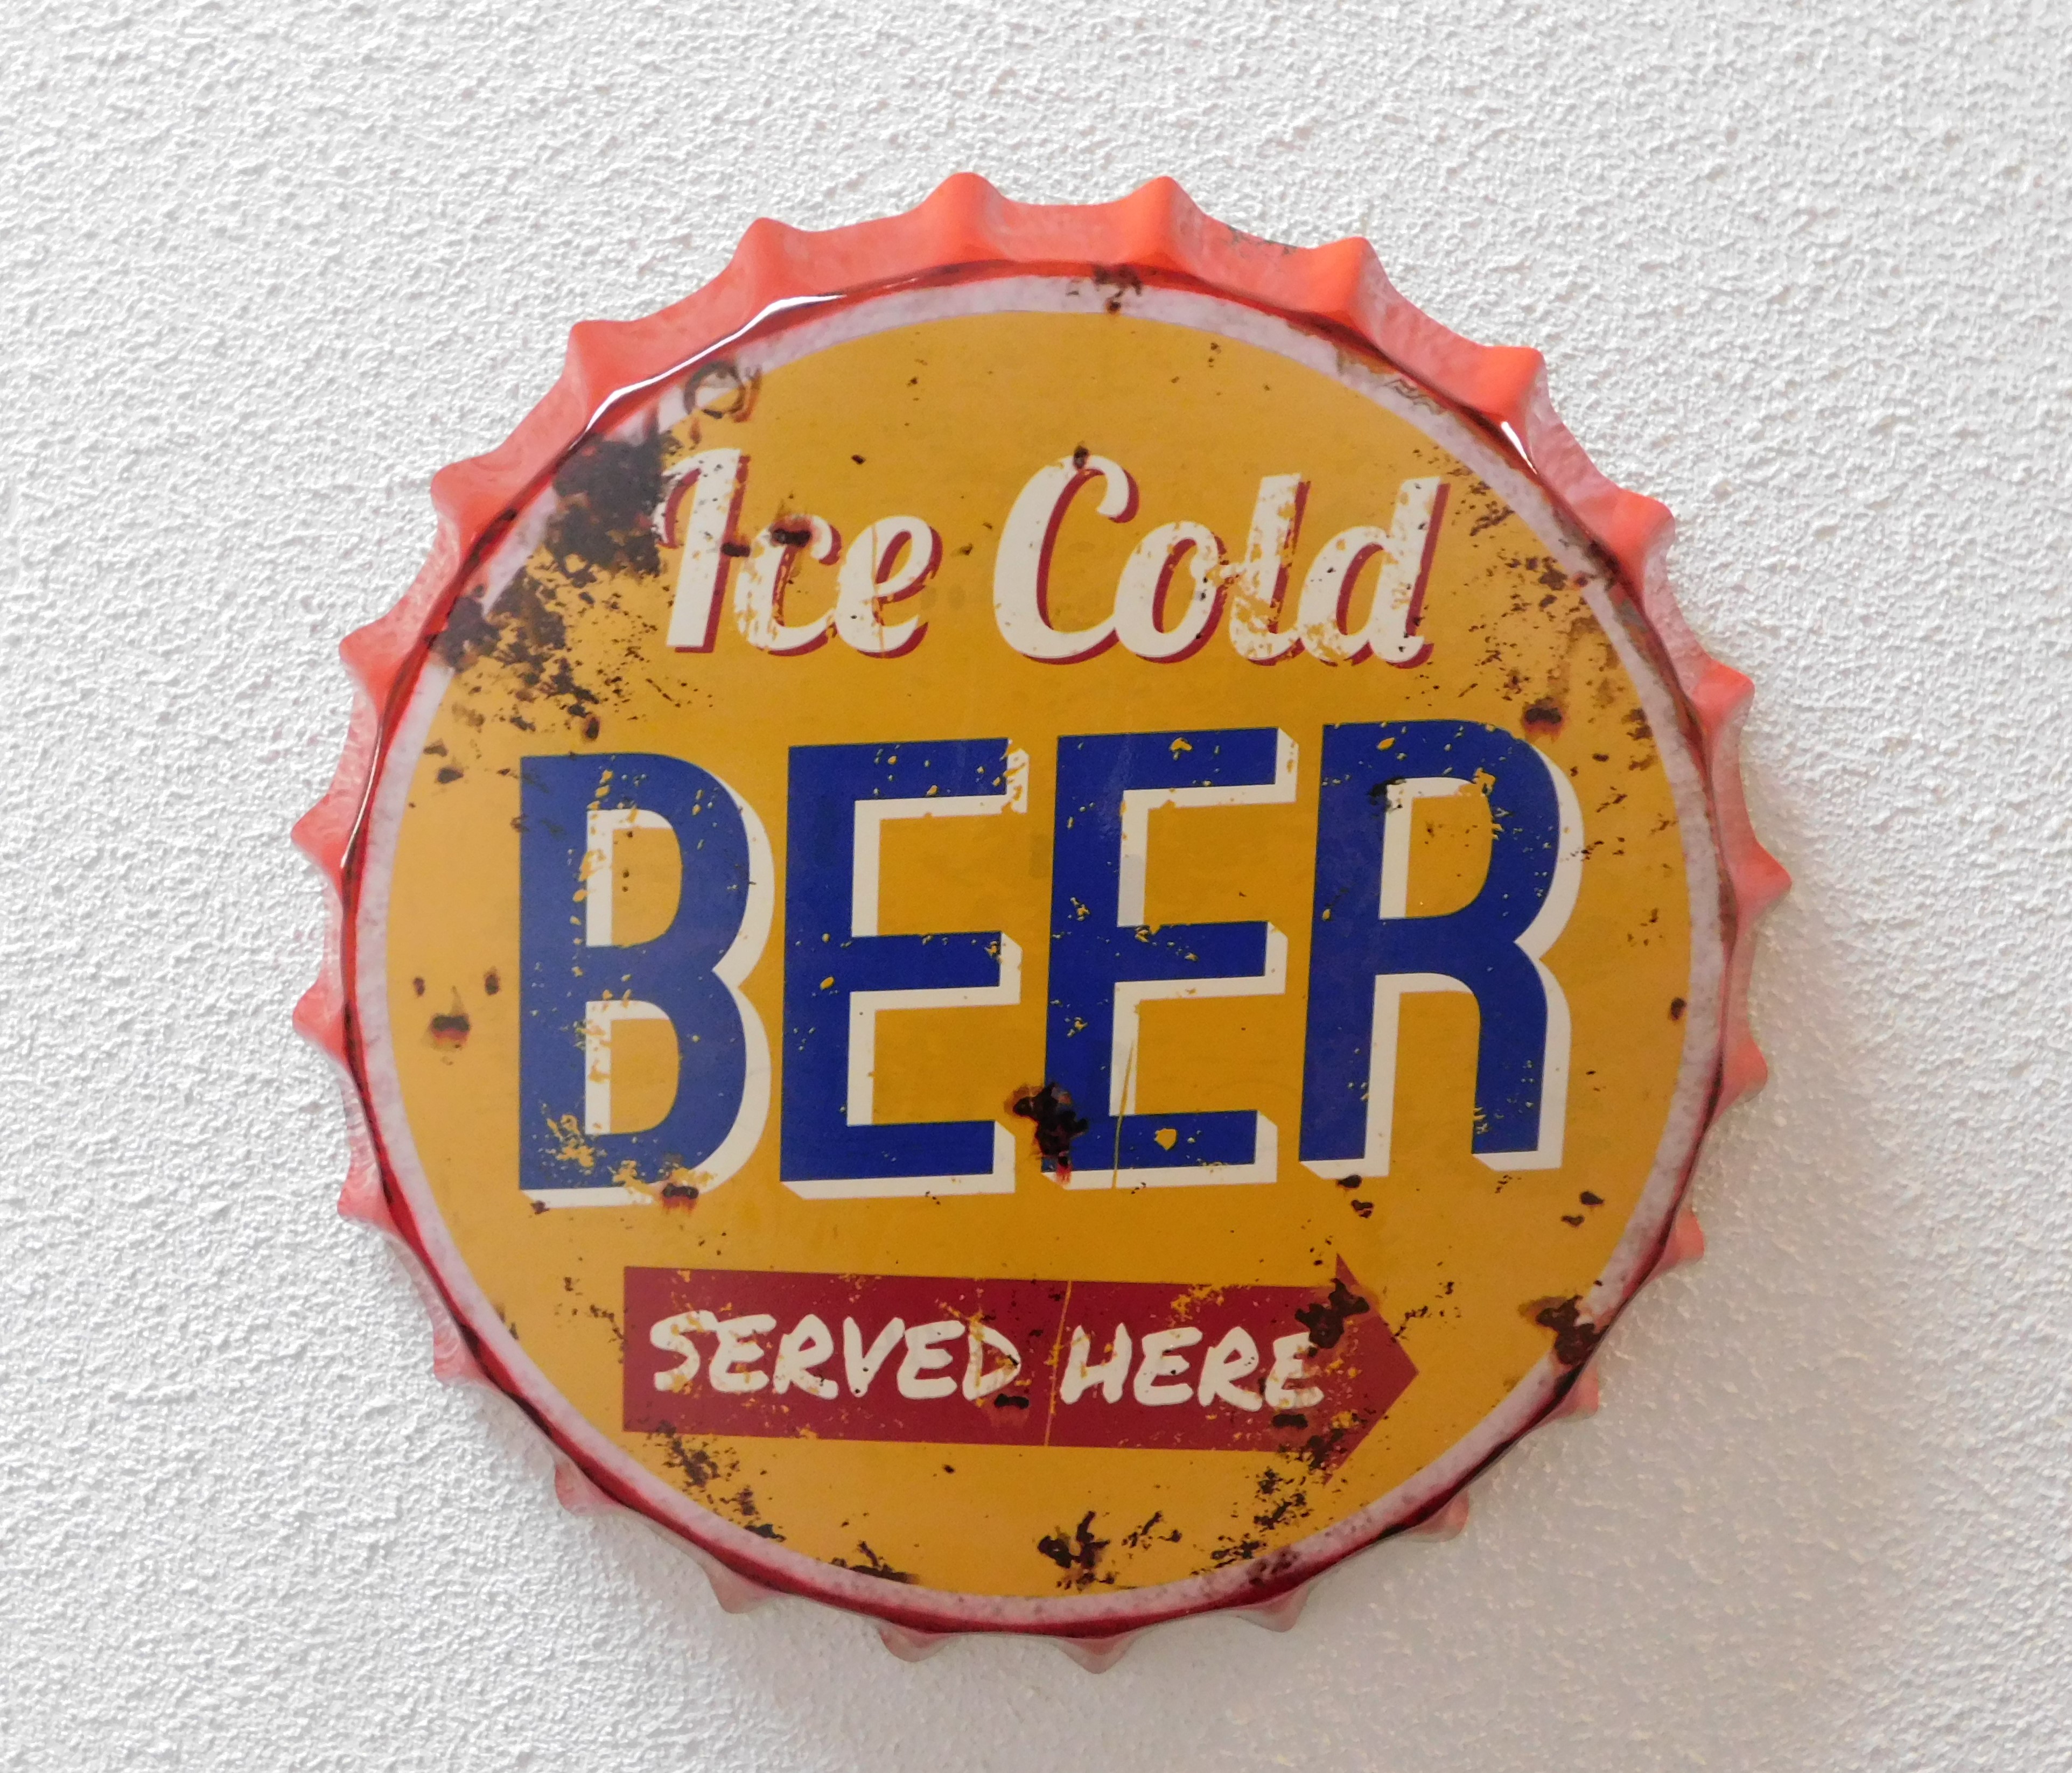 Prachtige metalen kroonkurk met tekst: ice cold beer served here!!